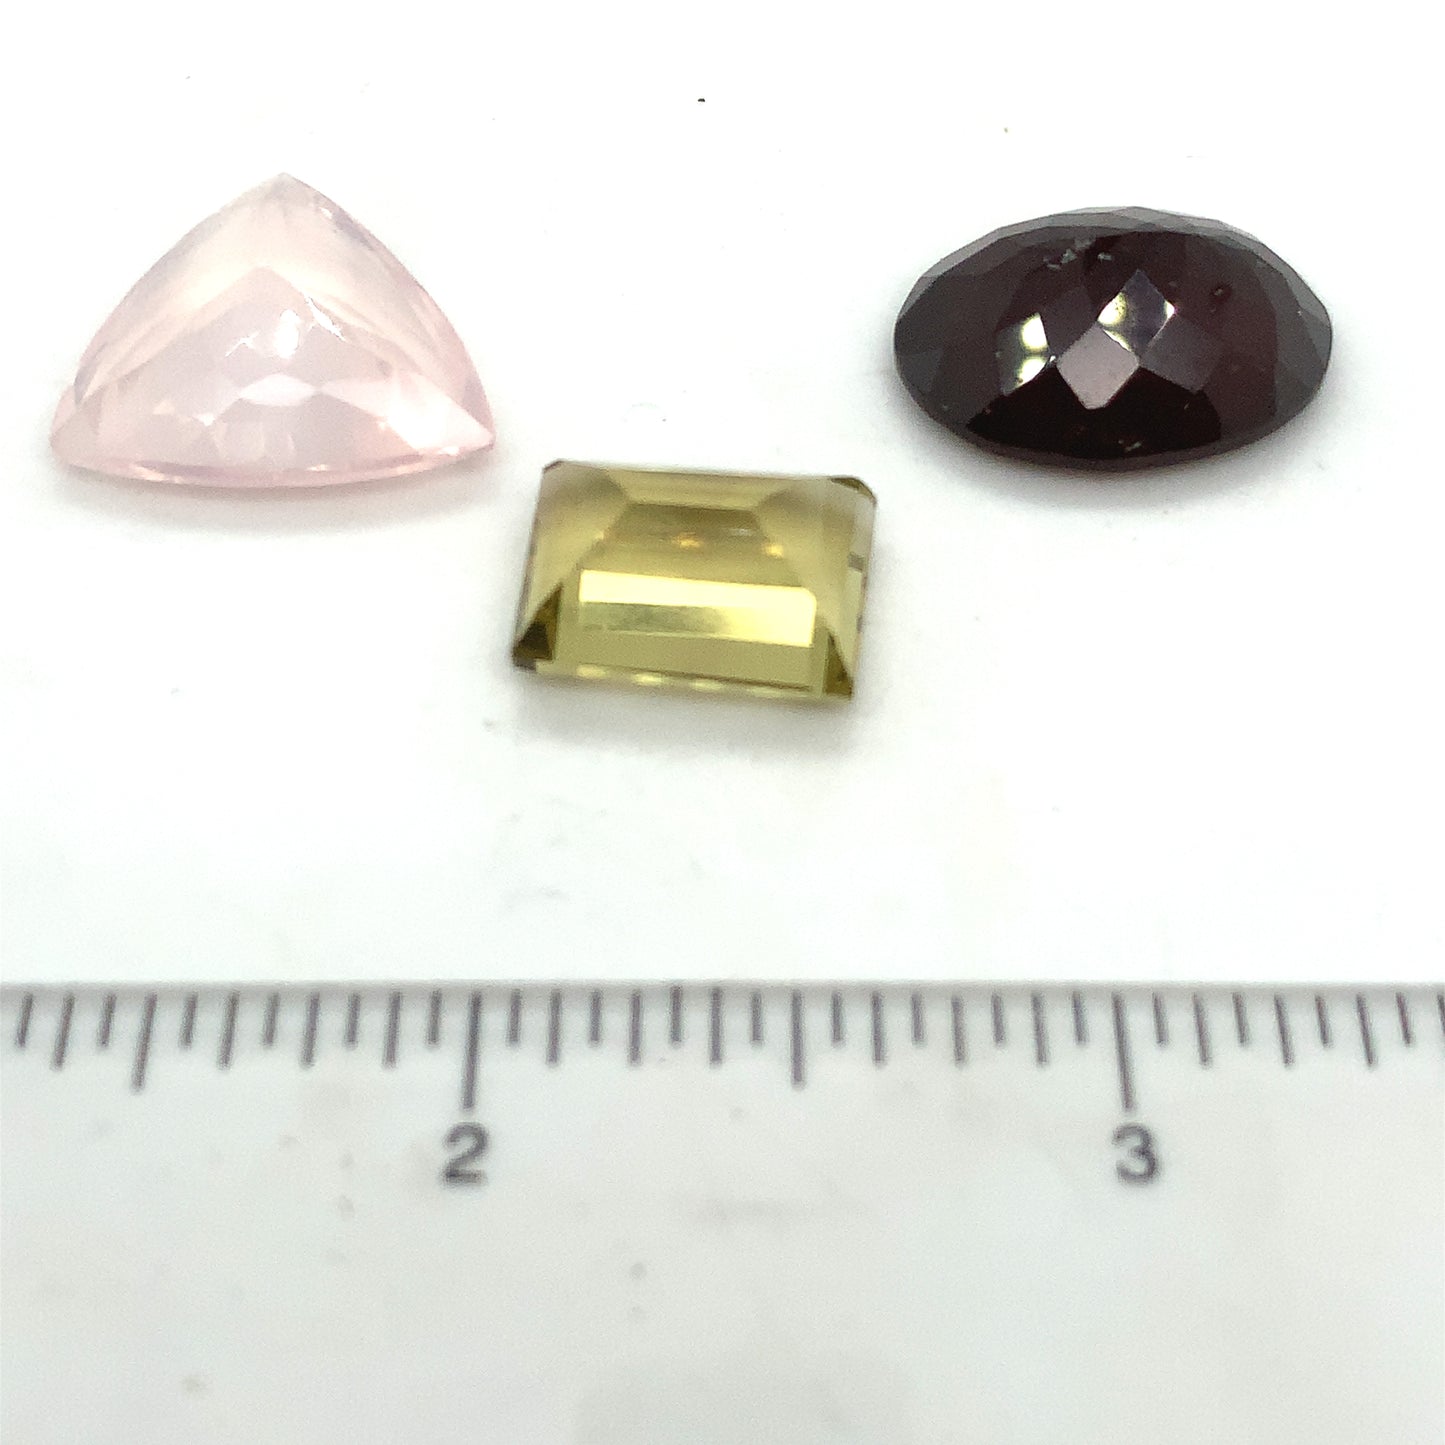 Gemstone Collection 267 - Hessonite, Rose Quartz, Lemon Quartz 47CT